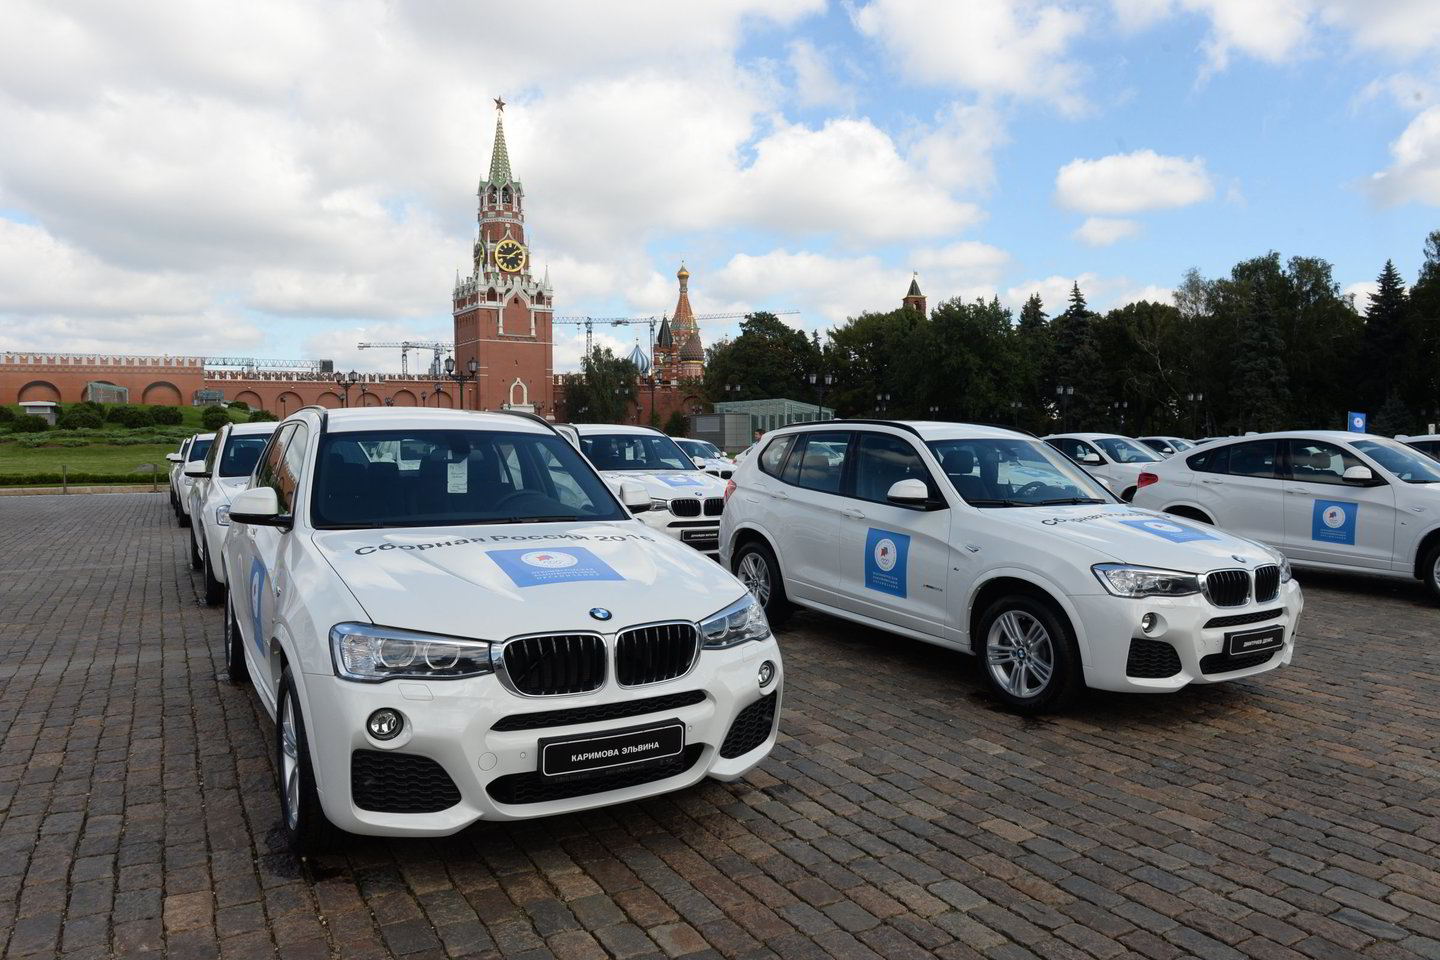  2016 metais po Rio žaidynių rusų medalininkams buvo įteikti BMW autmobiliai<br> Scanpix.com nuotr.